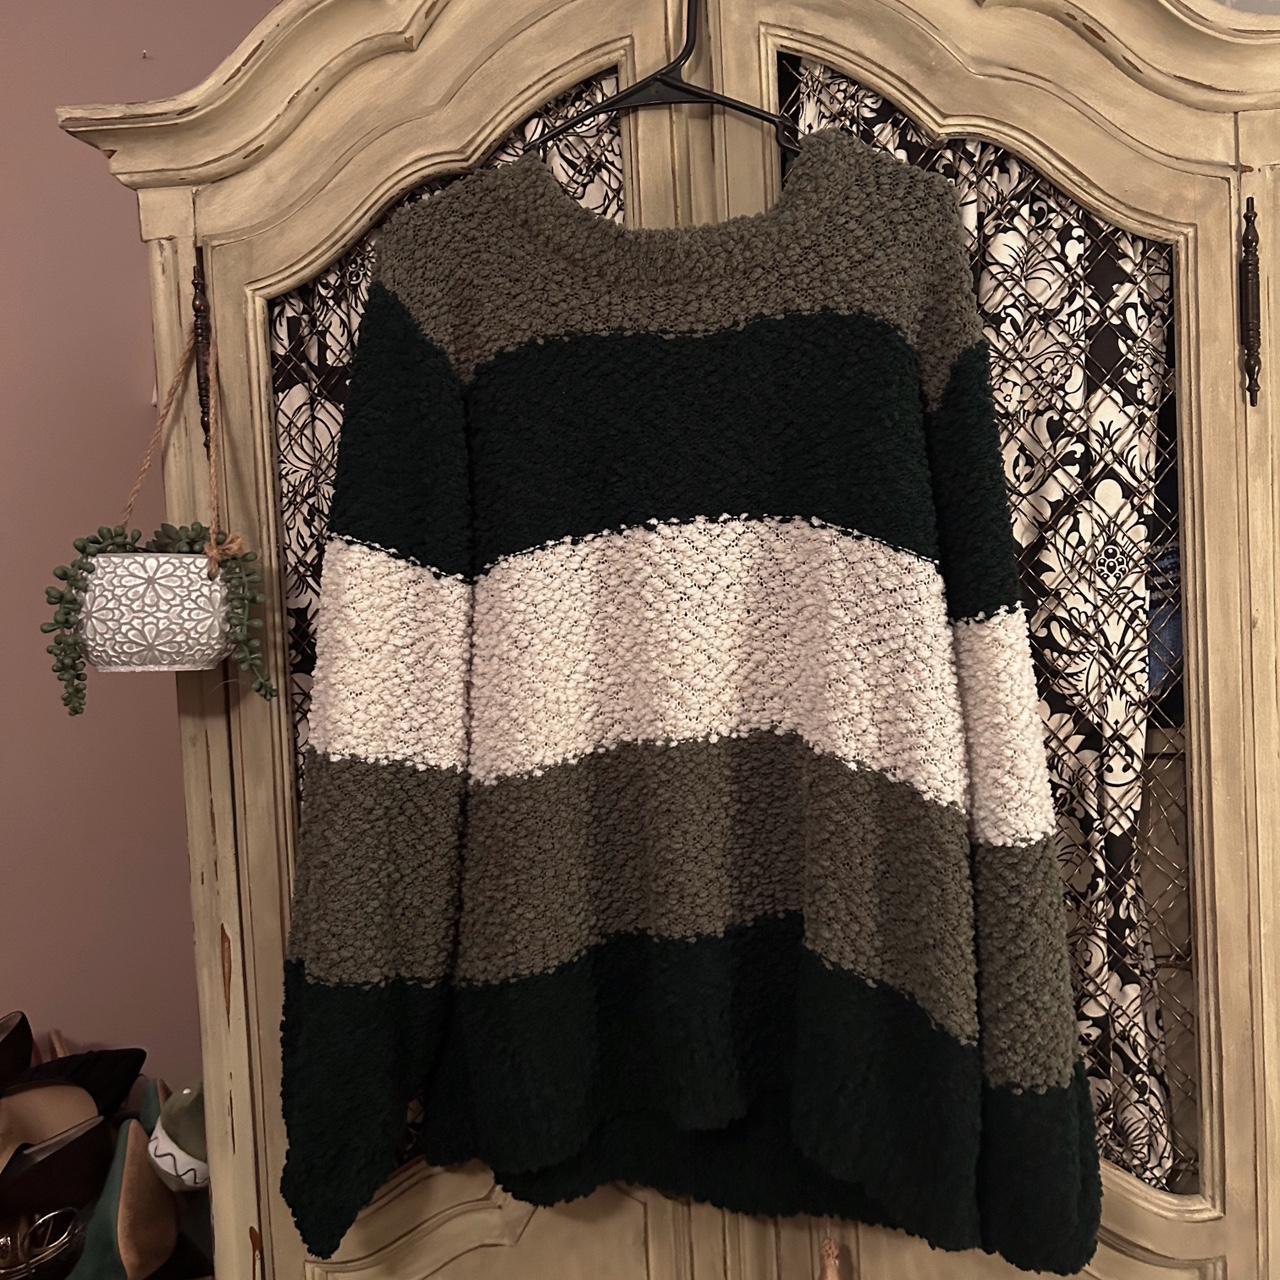 Cute cozy sweater - Depop